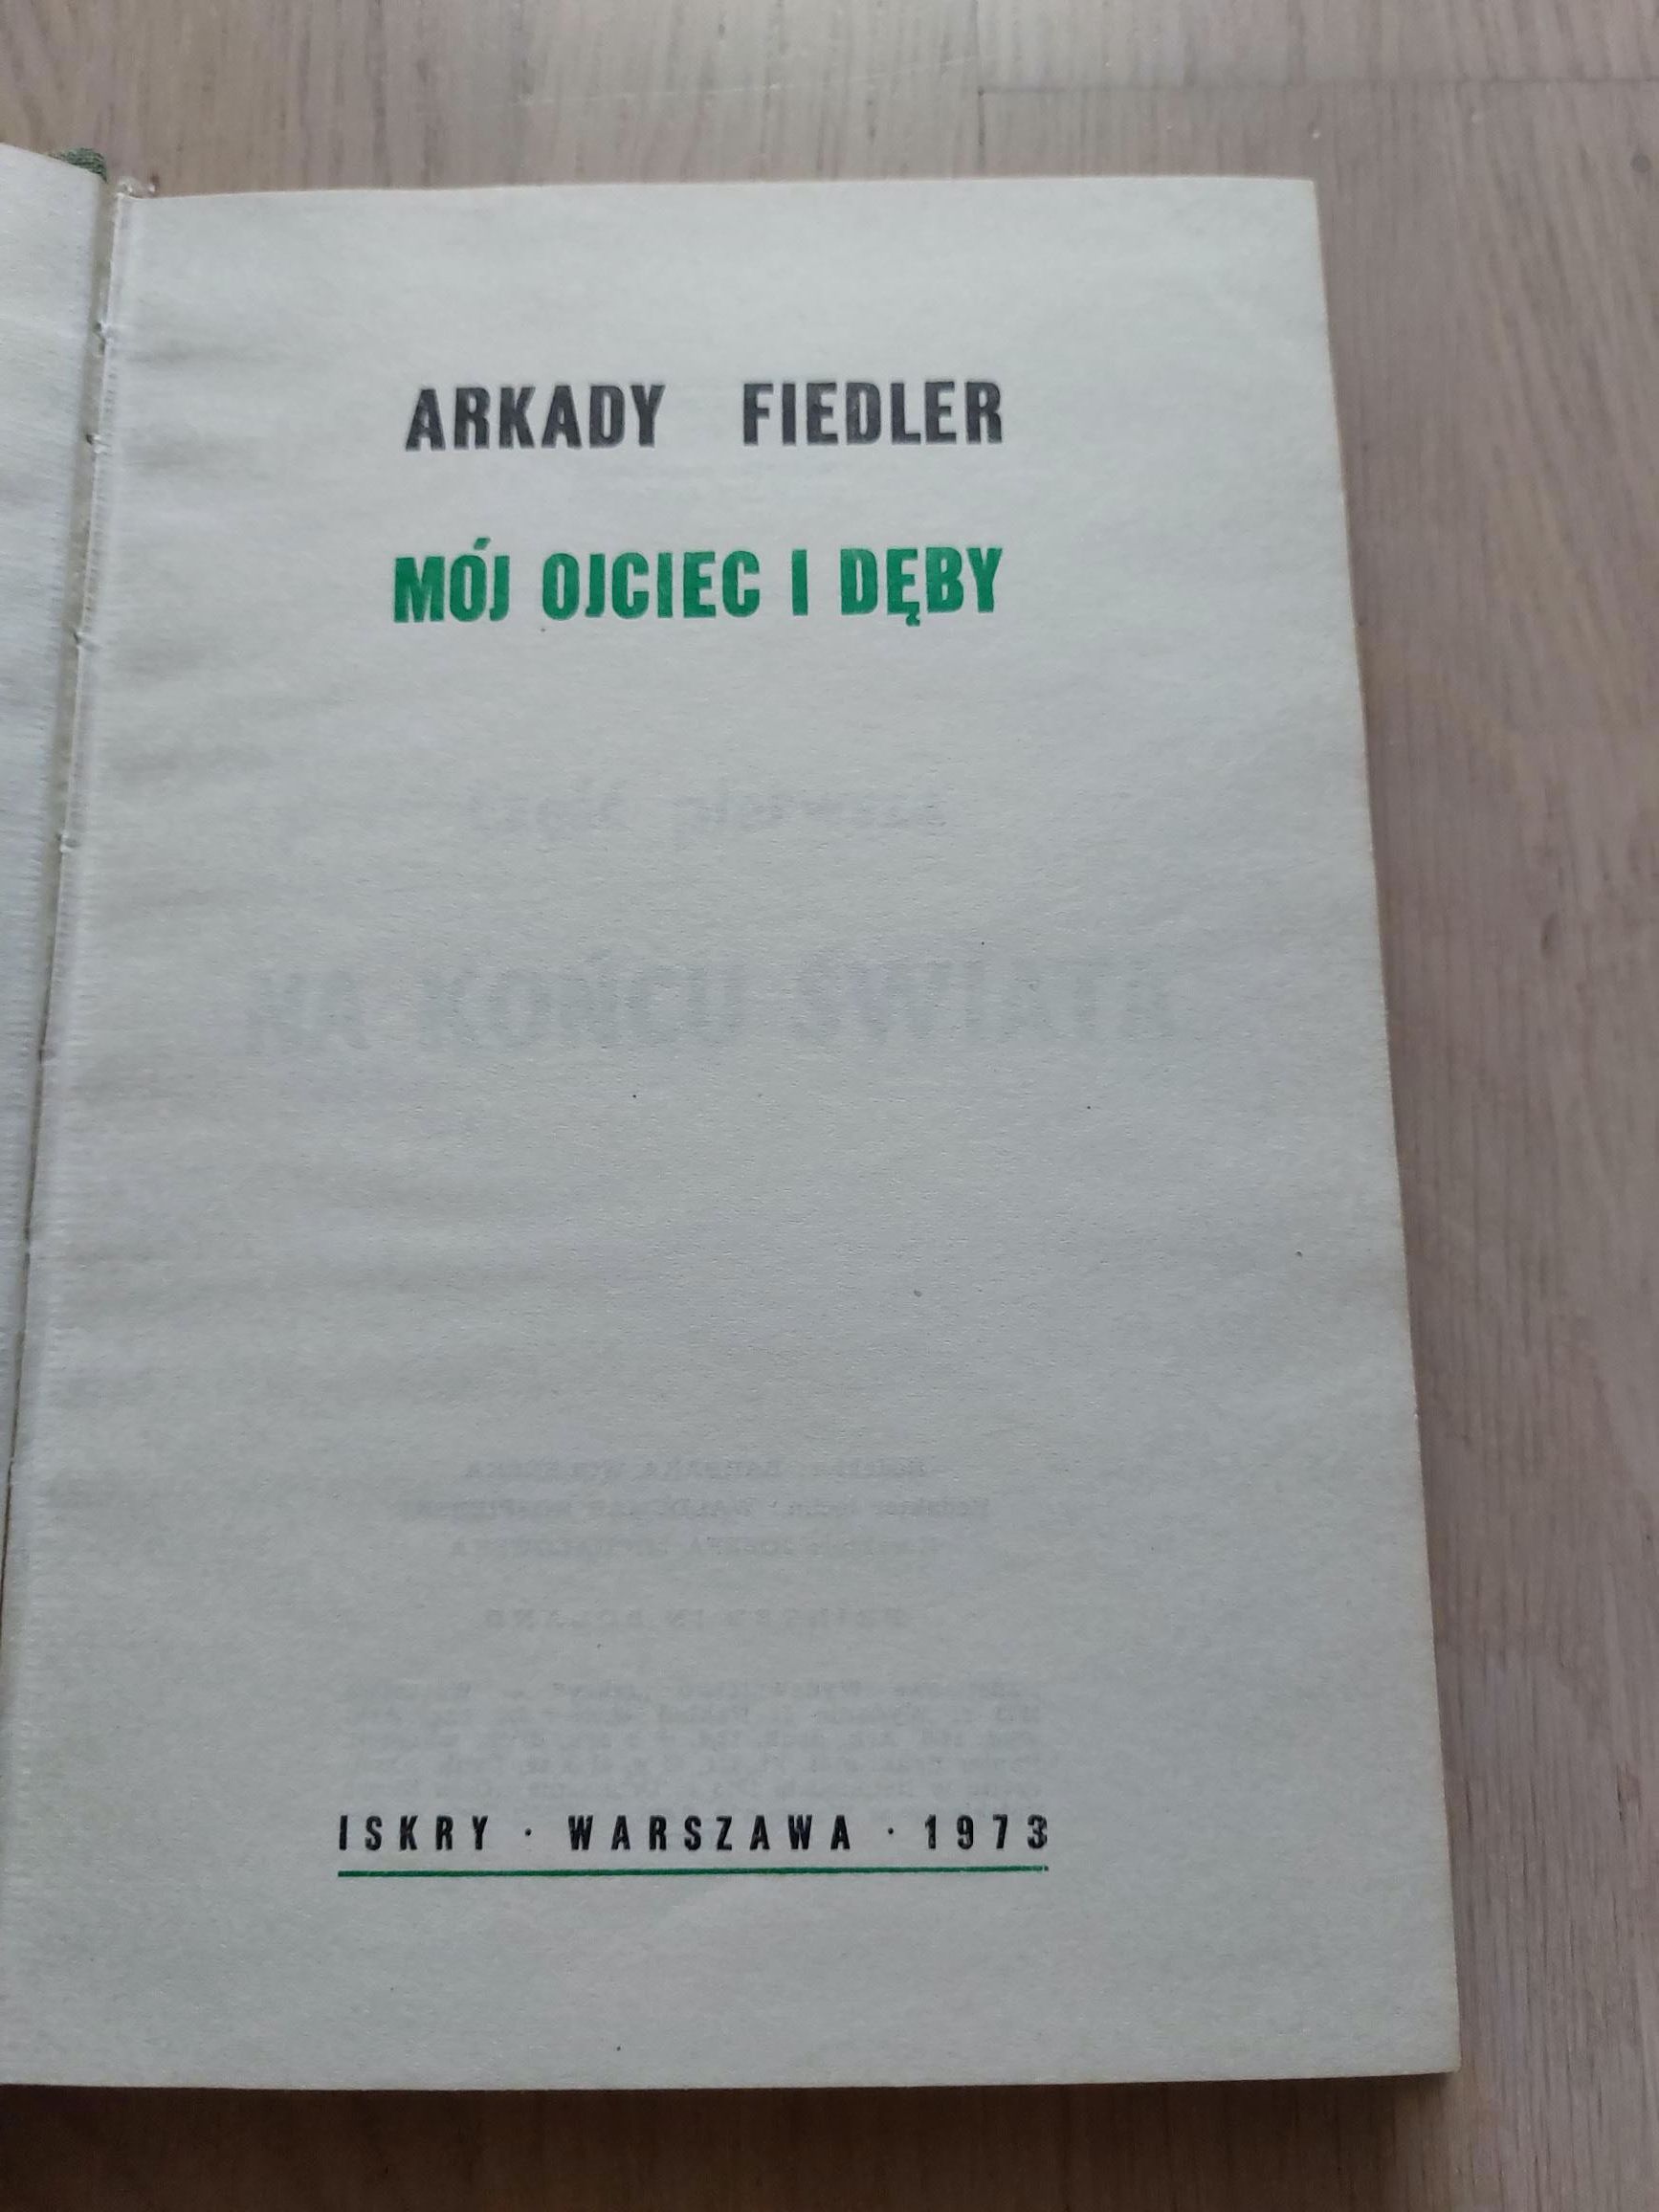 Arkady Fiedler, Mój ojciec i dęby, Iskry 1973